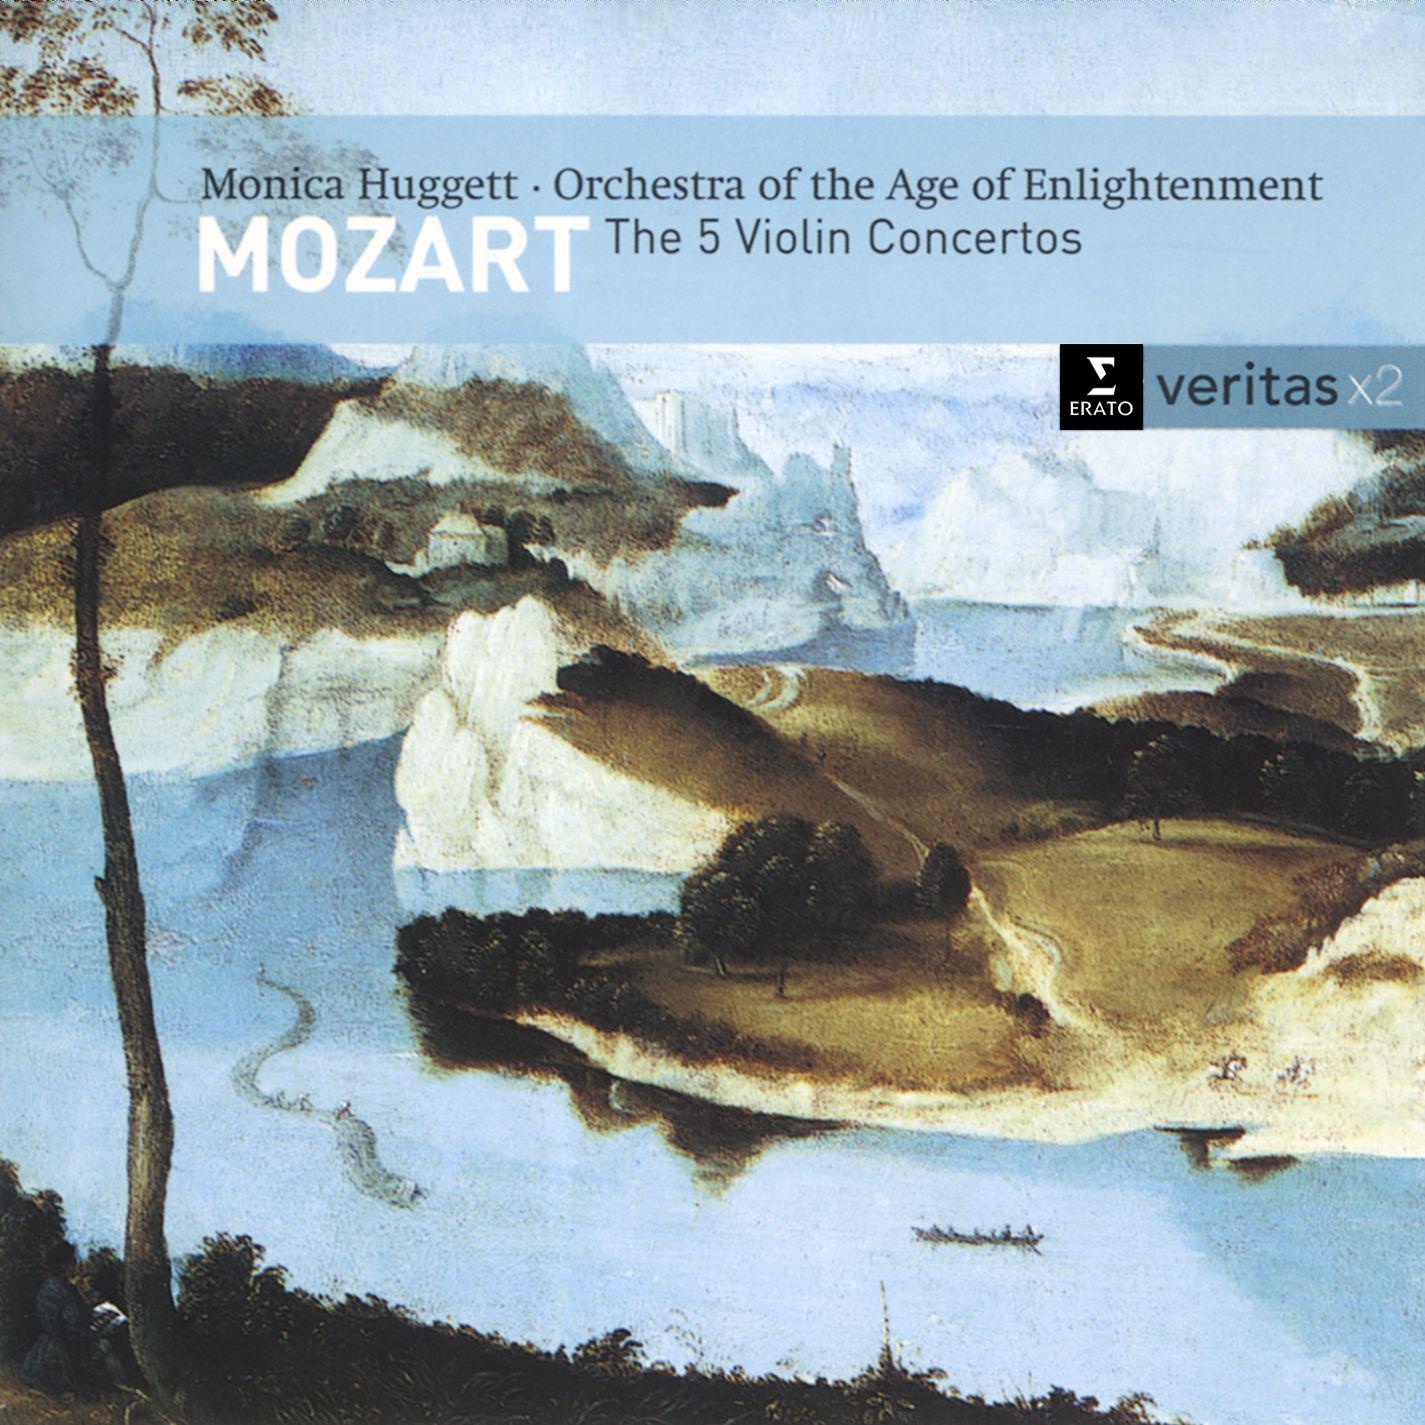 Violin Concerto No. 2 in D major K211: I. Allegro moderato